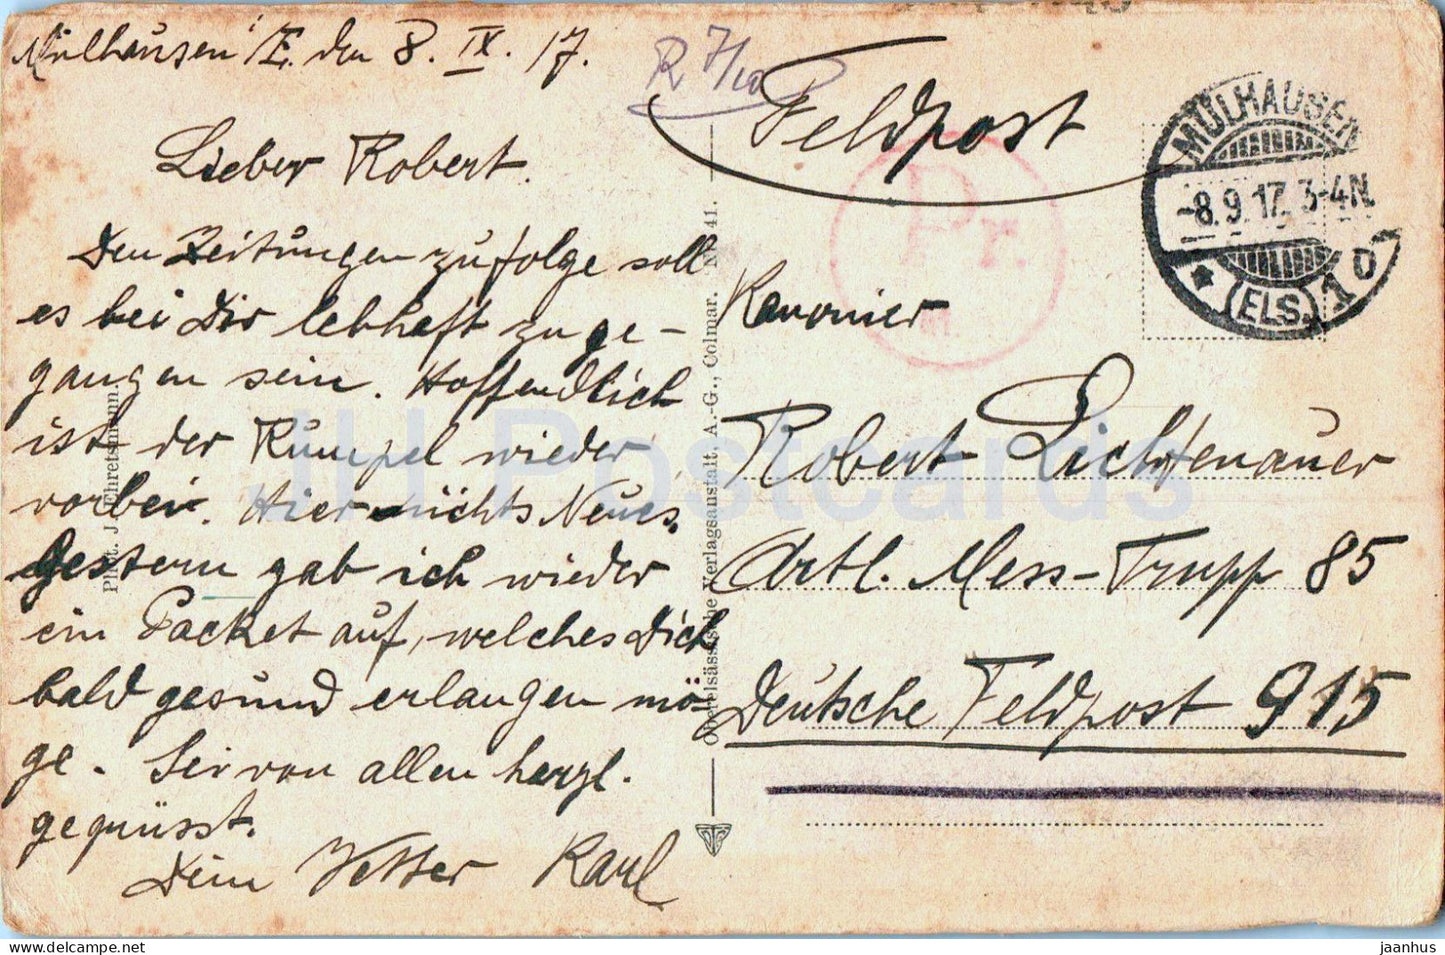 Mittlach mit Rotenbachkopf vom Wege Metzeral - Feldpost - Militärpost - alte Postkarte - 1917 - Frankreich - gebraucht 